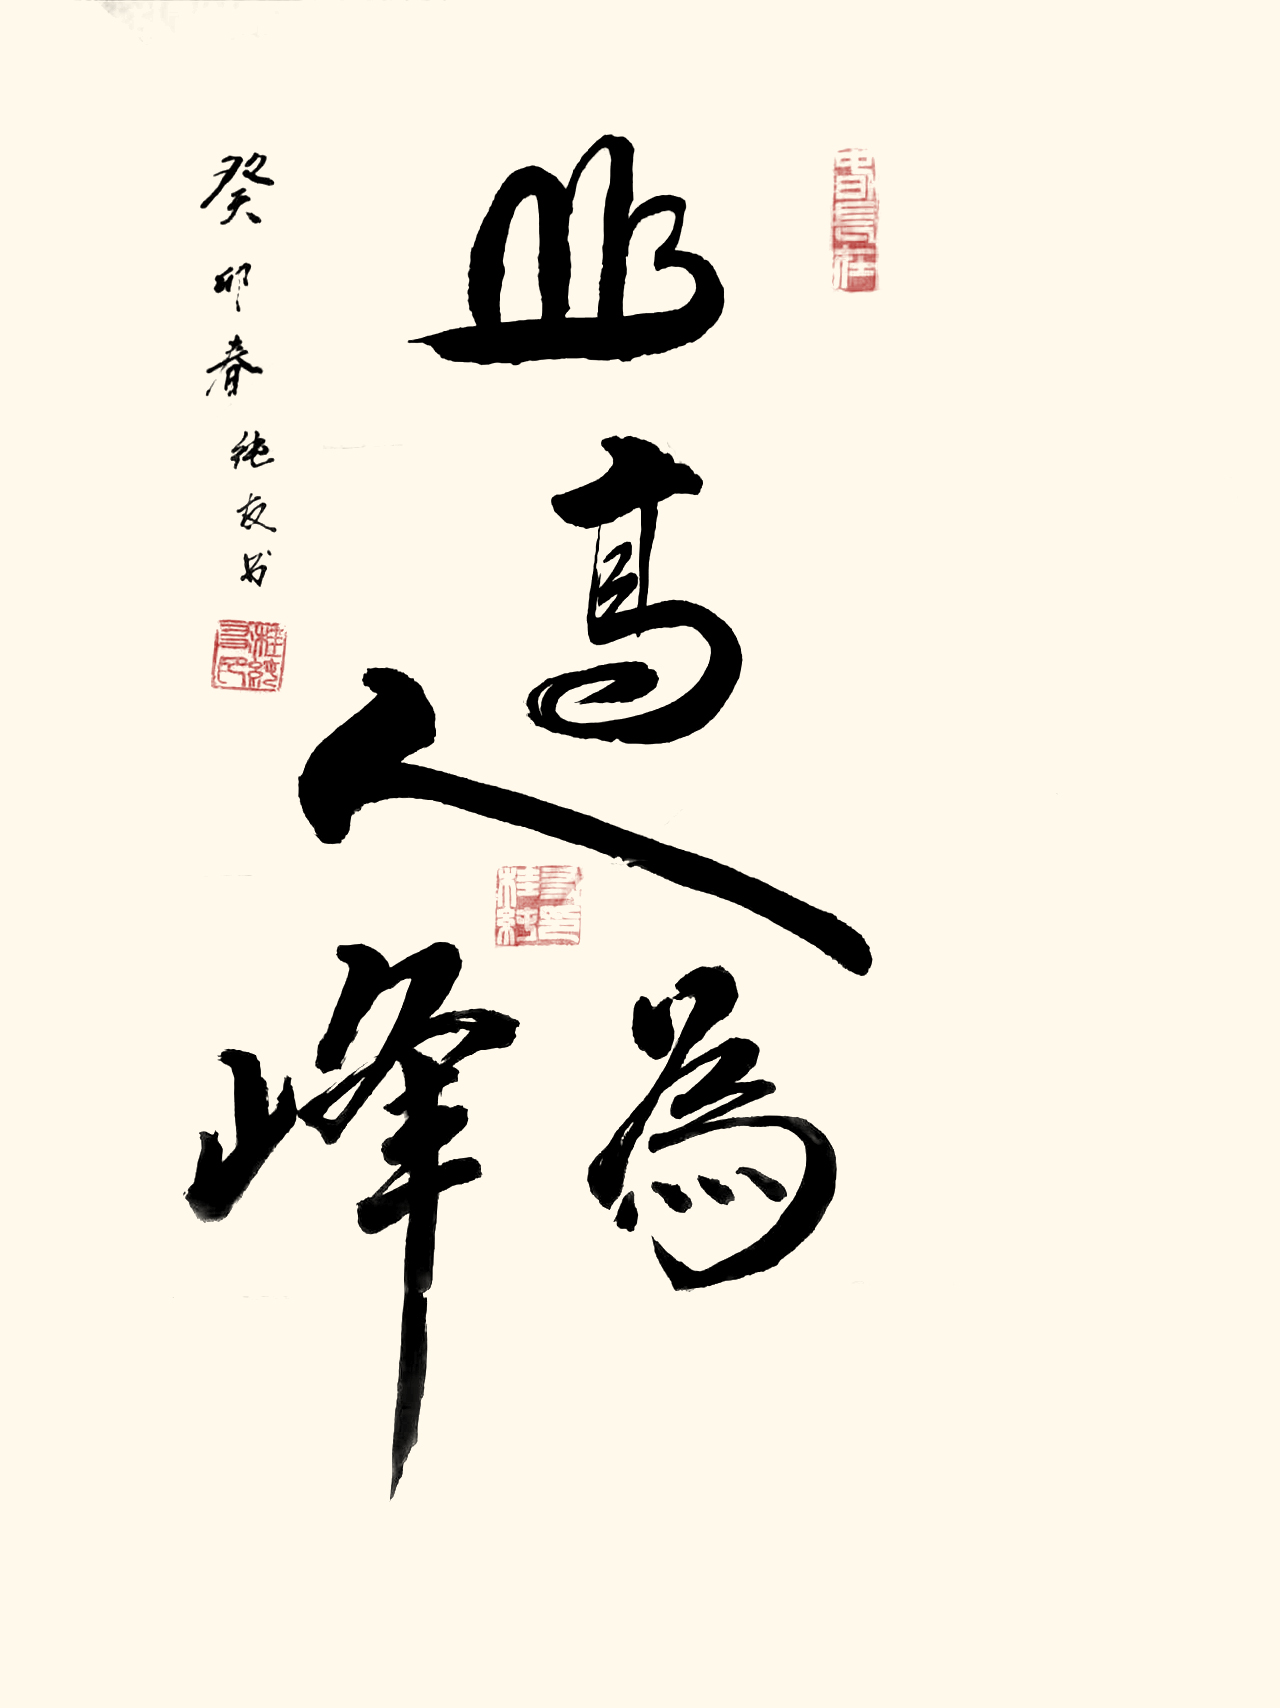 中国大众文化学会名人书画艺术发展委员会——桂纯友